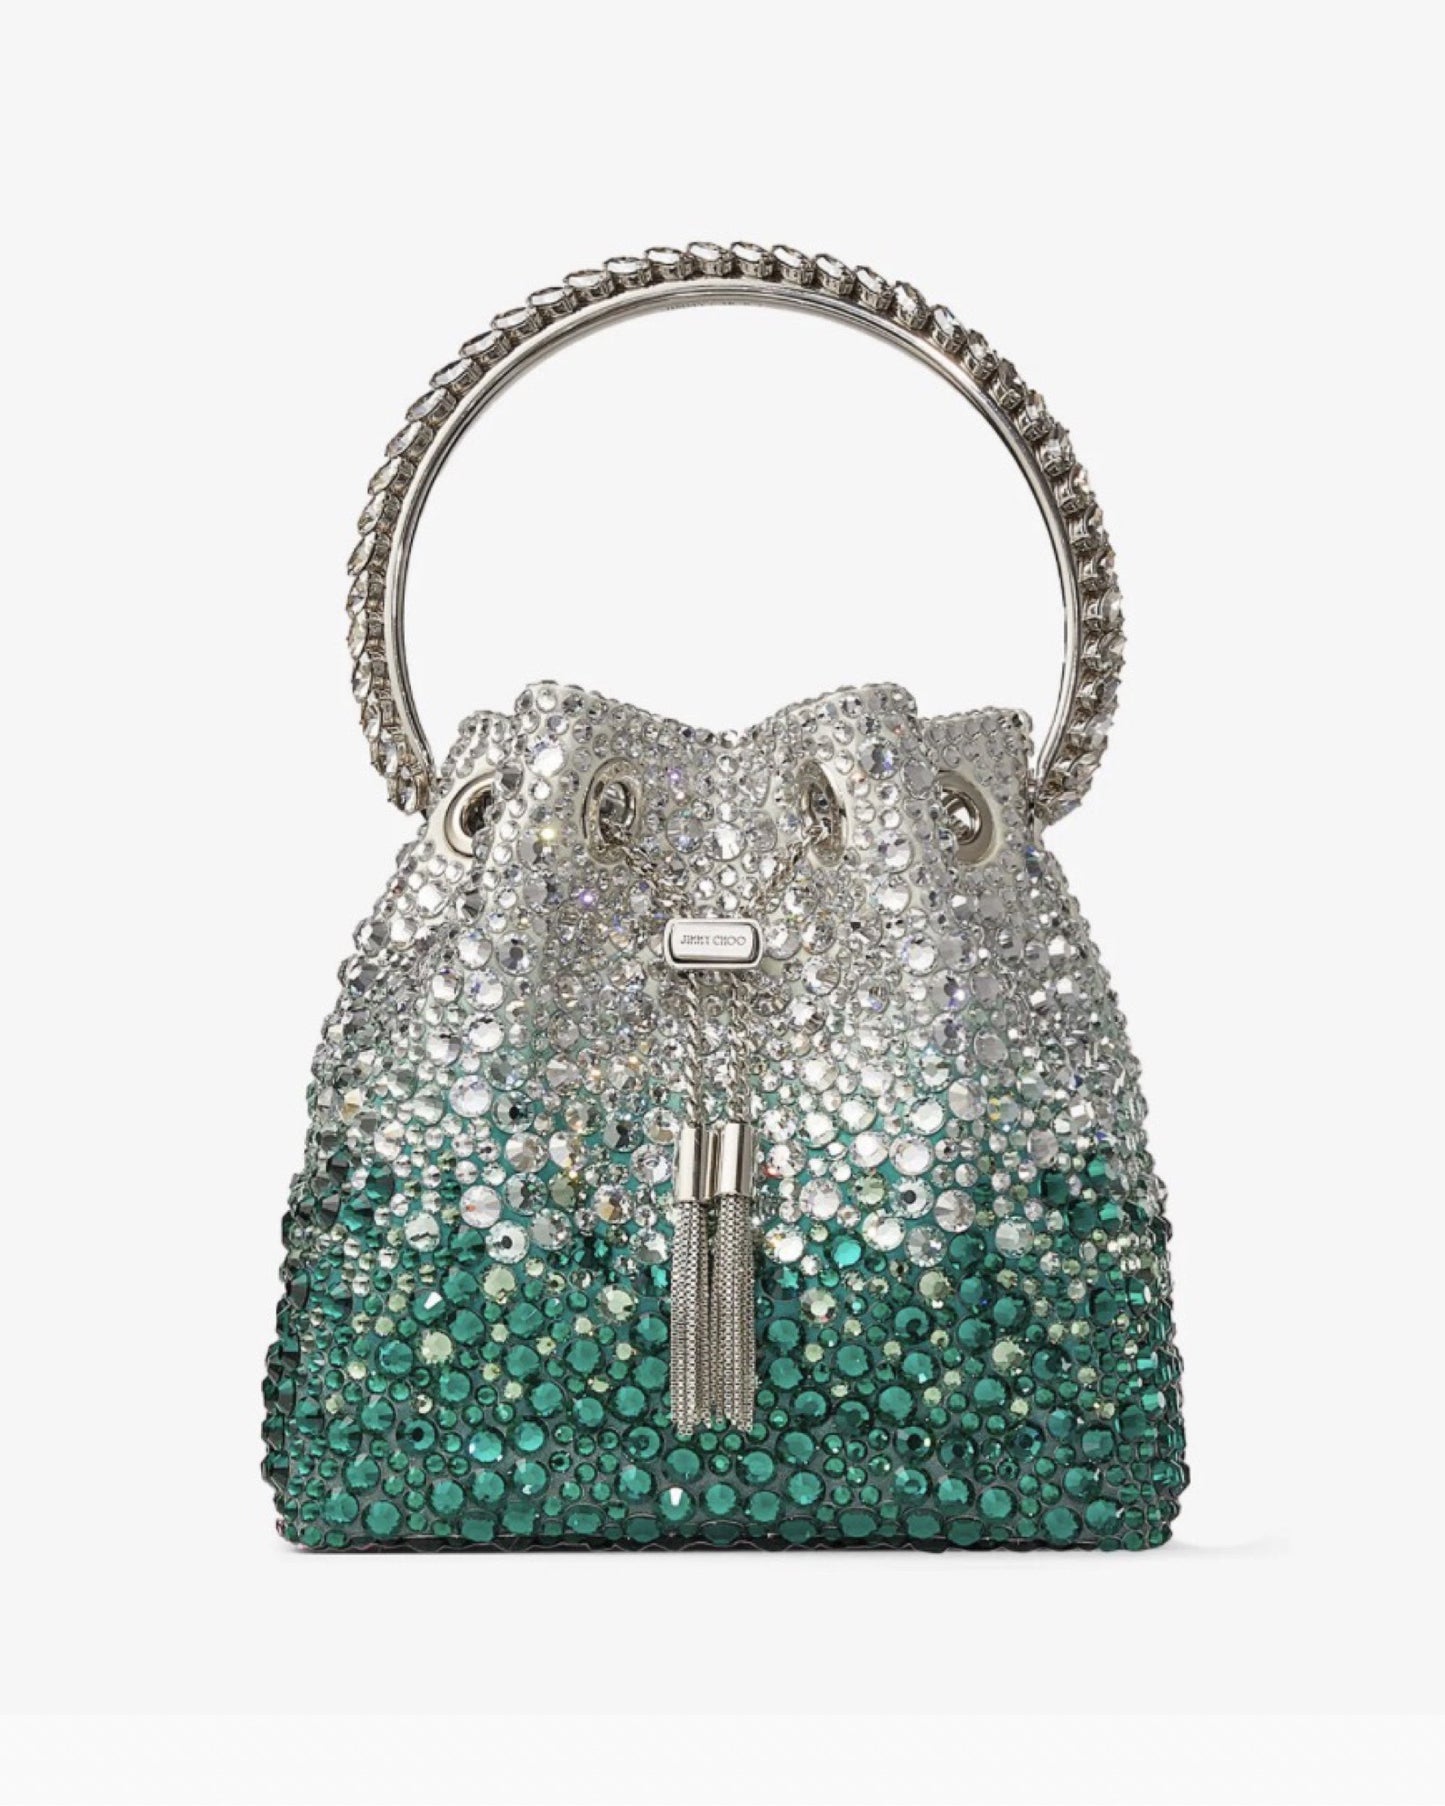 Bon Bon Crystal Embellished Bag Emerald/Silver